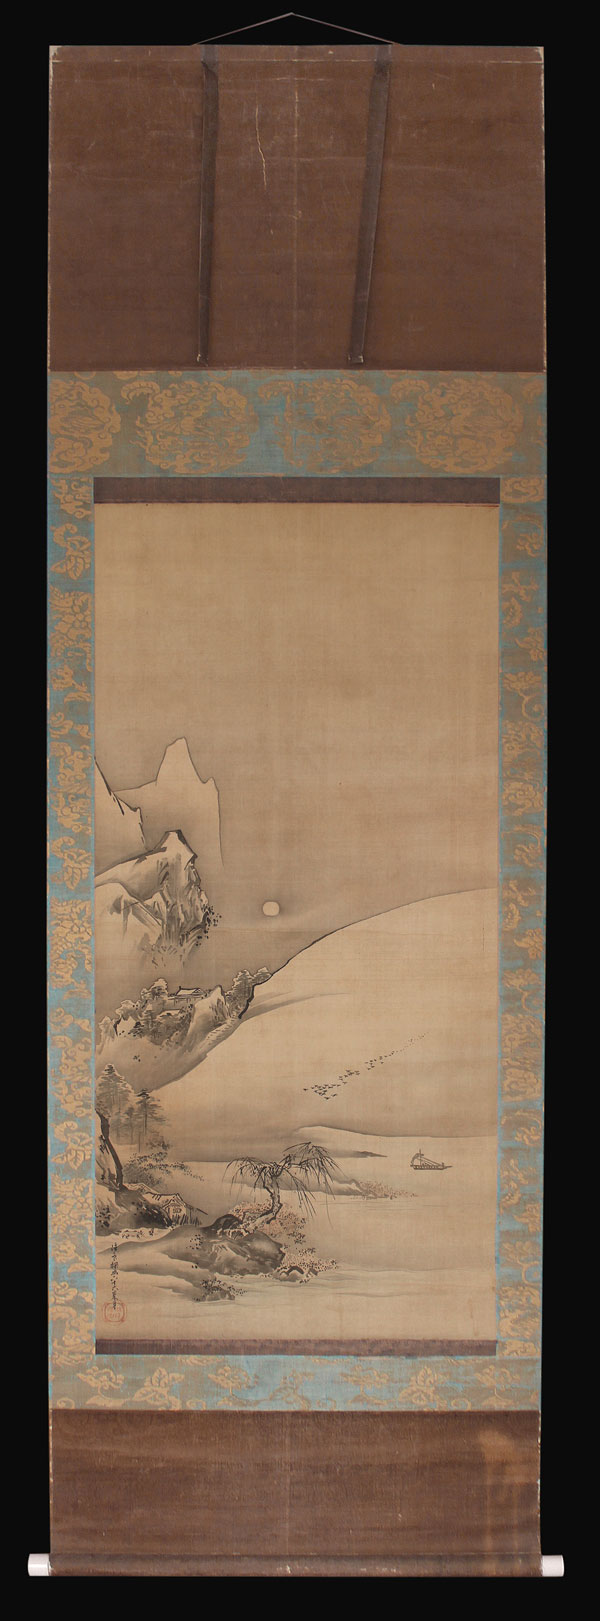 Kano-Tanyo-Morinobu-Bildrolle-antik-Japan-KAK138A